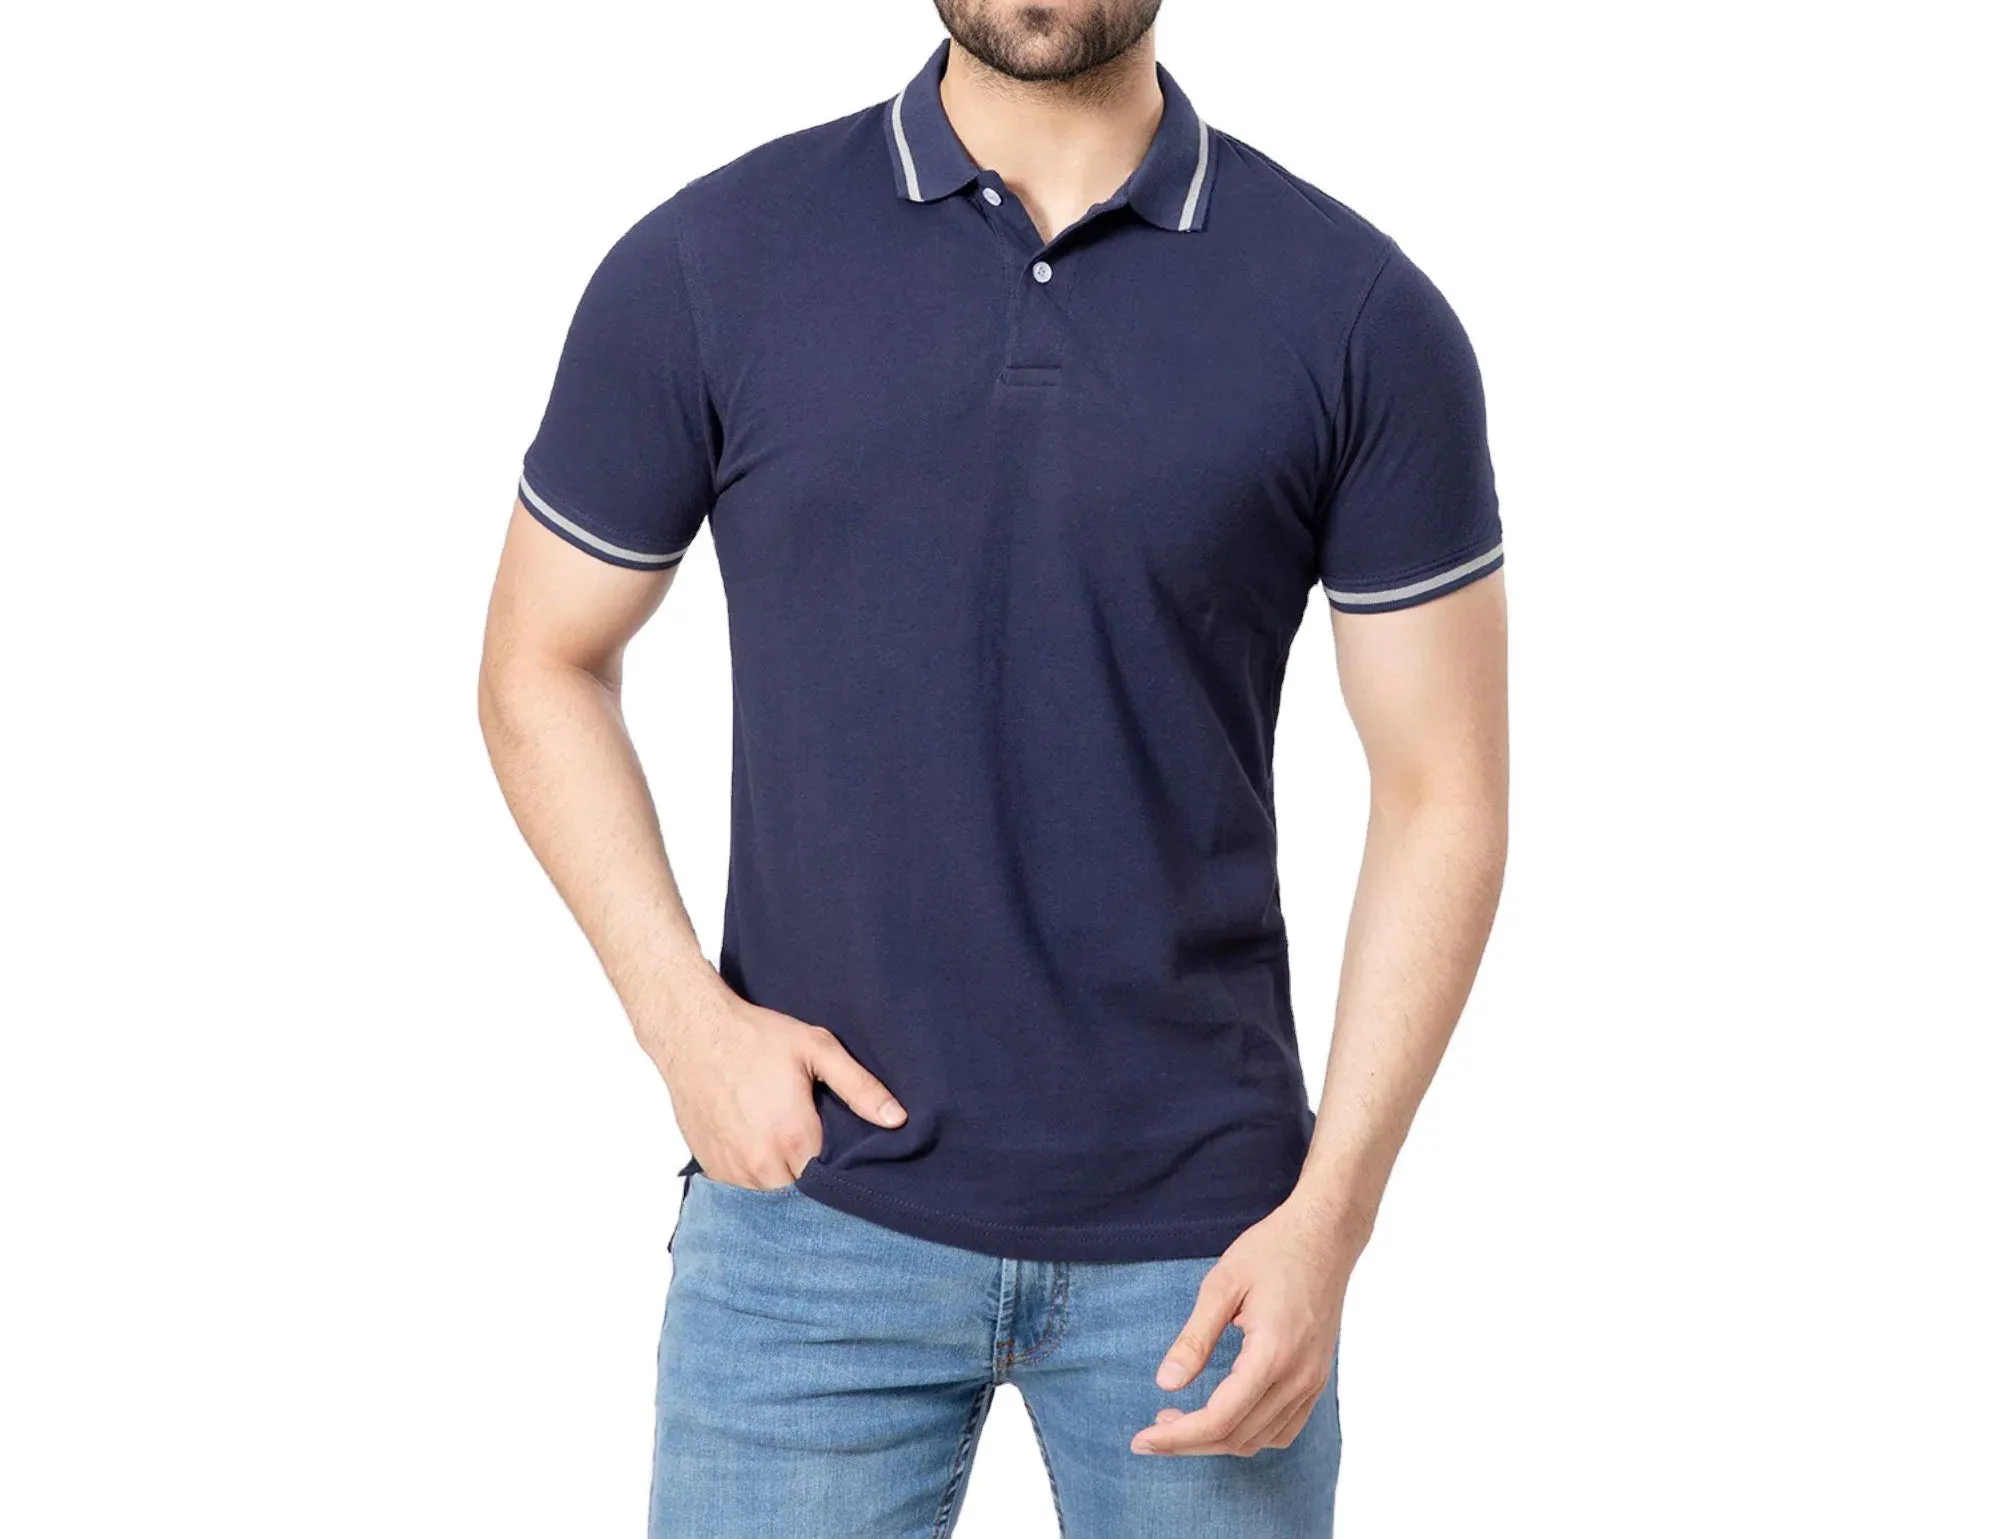 Kaus Polo katun kontras motif garis bergaya bernapas pria dibuat di Pakistan harga grosir kualitas terbaik dengan harga murah